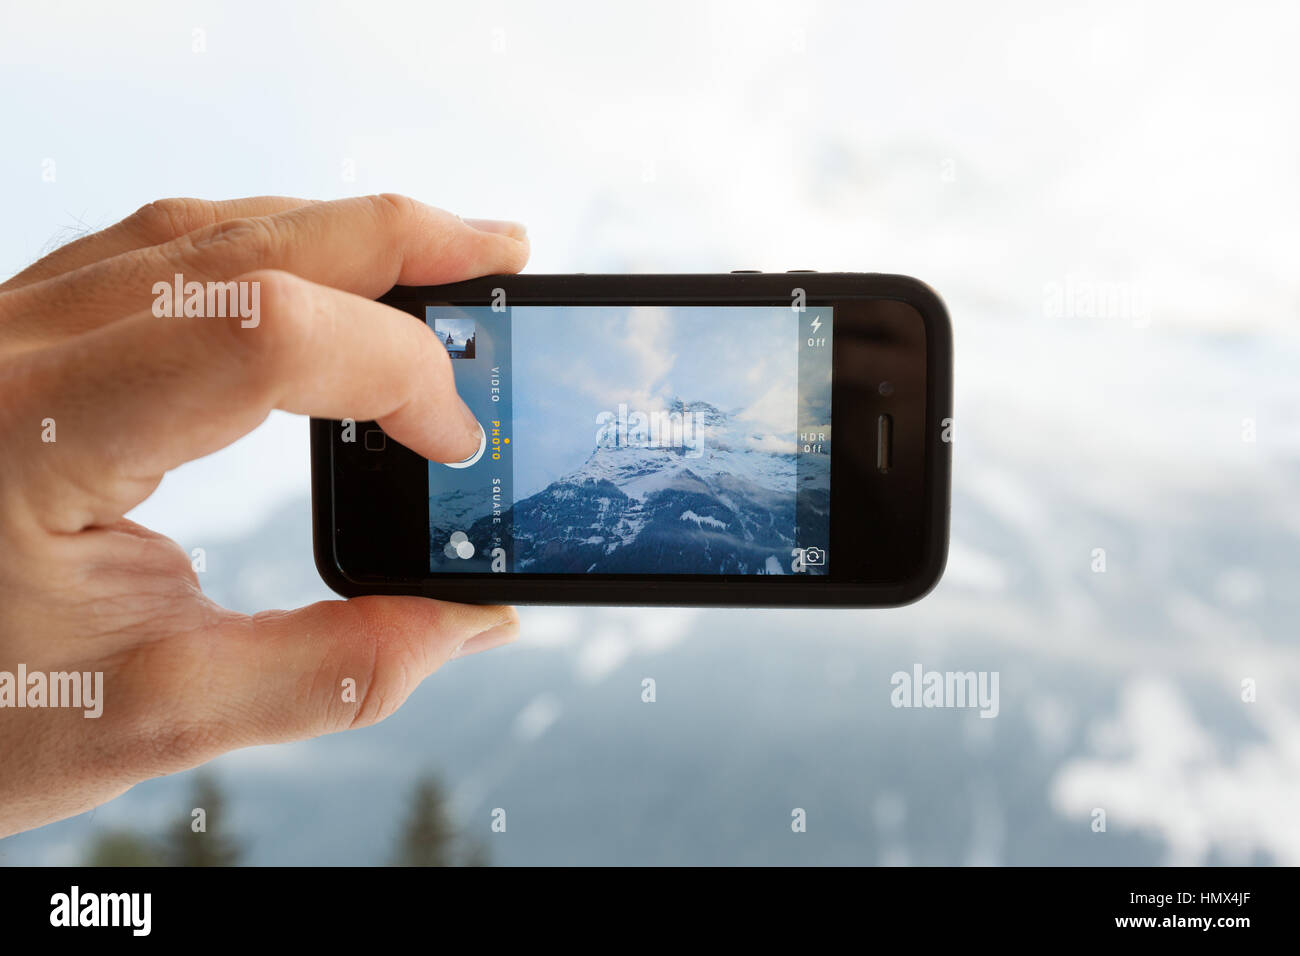 GRINDELWALD, Schweiz - 4. Februar 2014: Mann ein Foto von den Eiger mit der Kamera-app auf einem Apple iPhone 4 s. Close-up erschossen von der Stockfoto